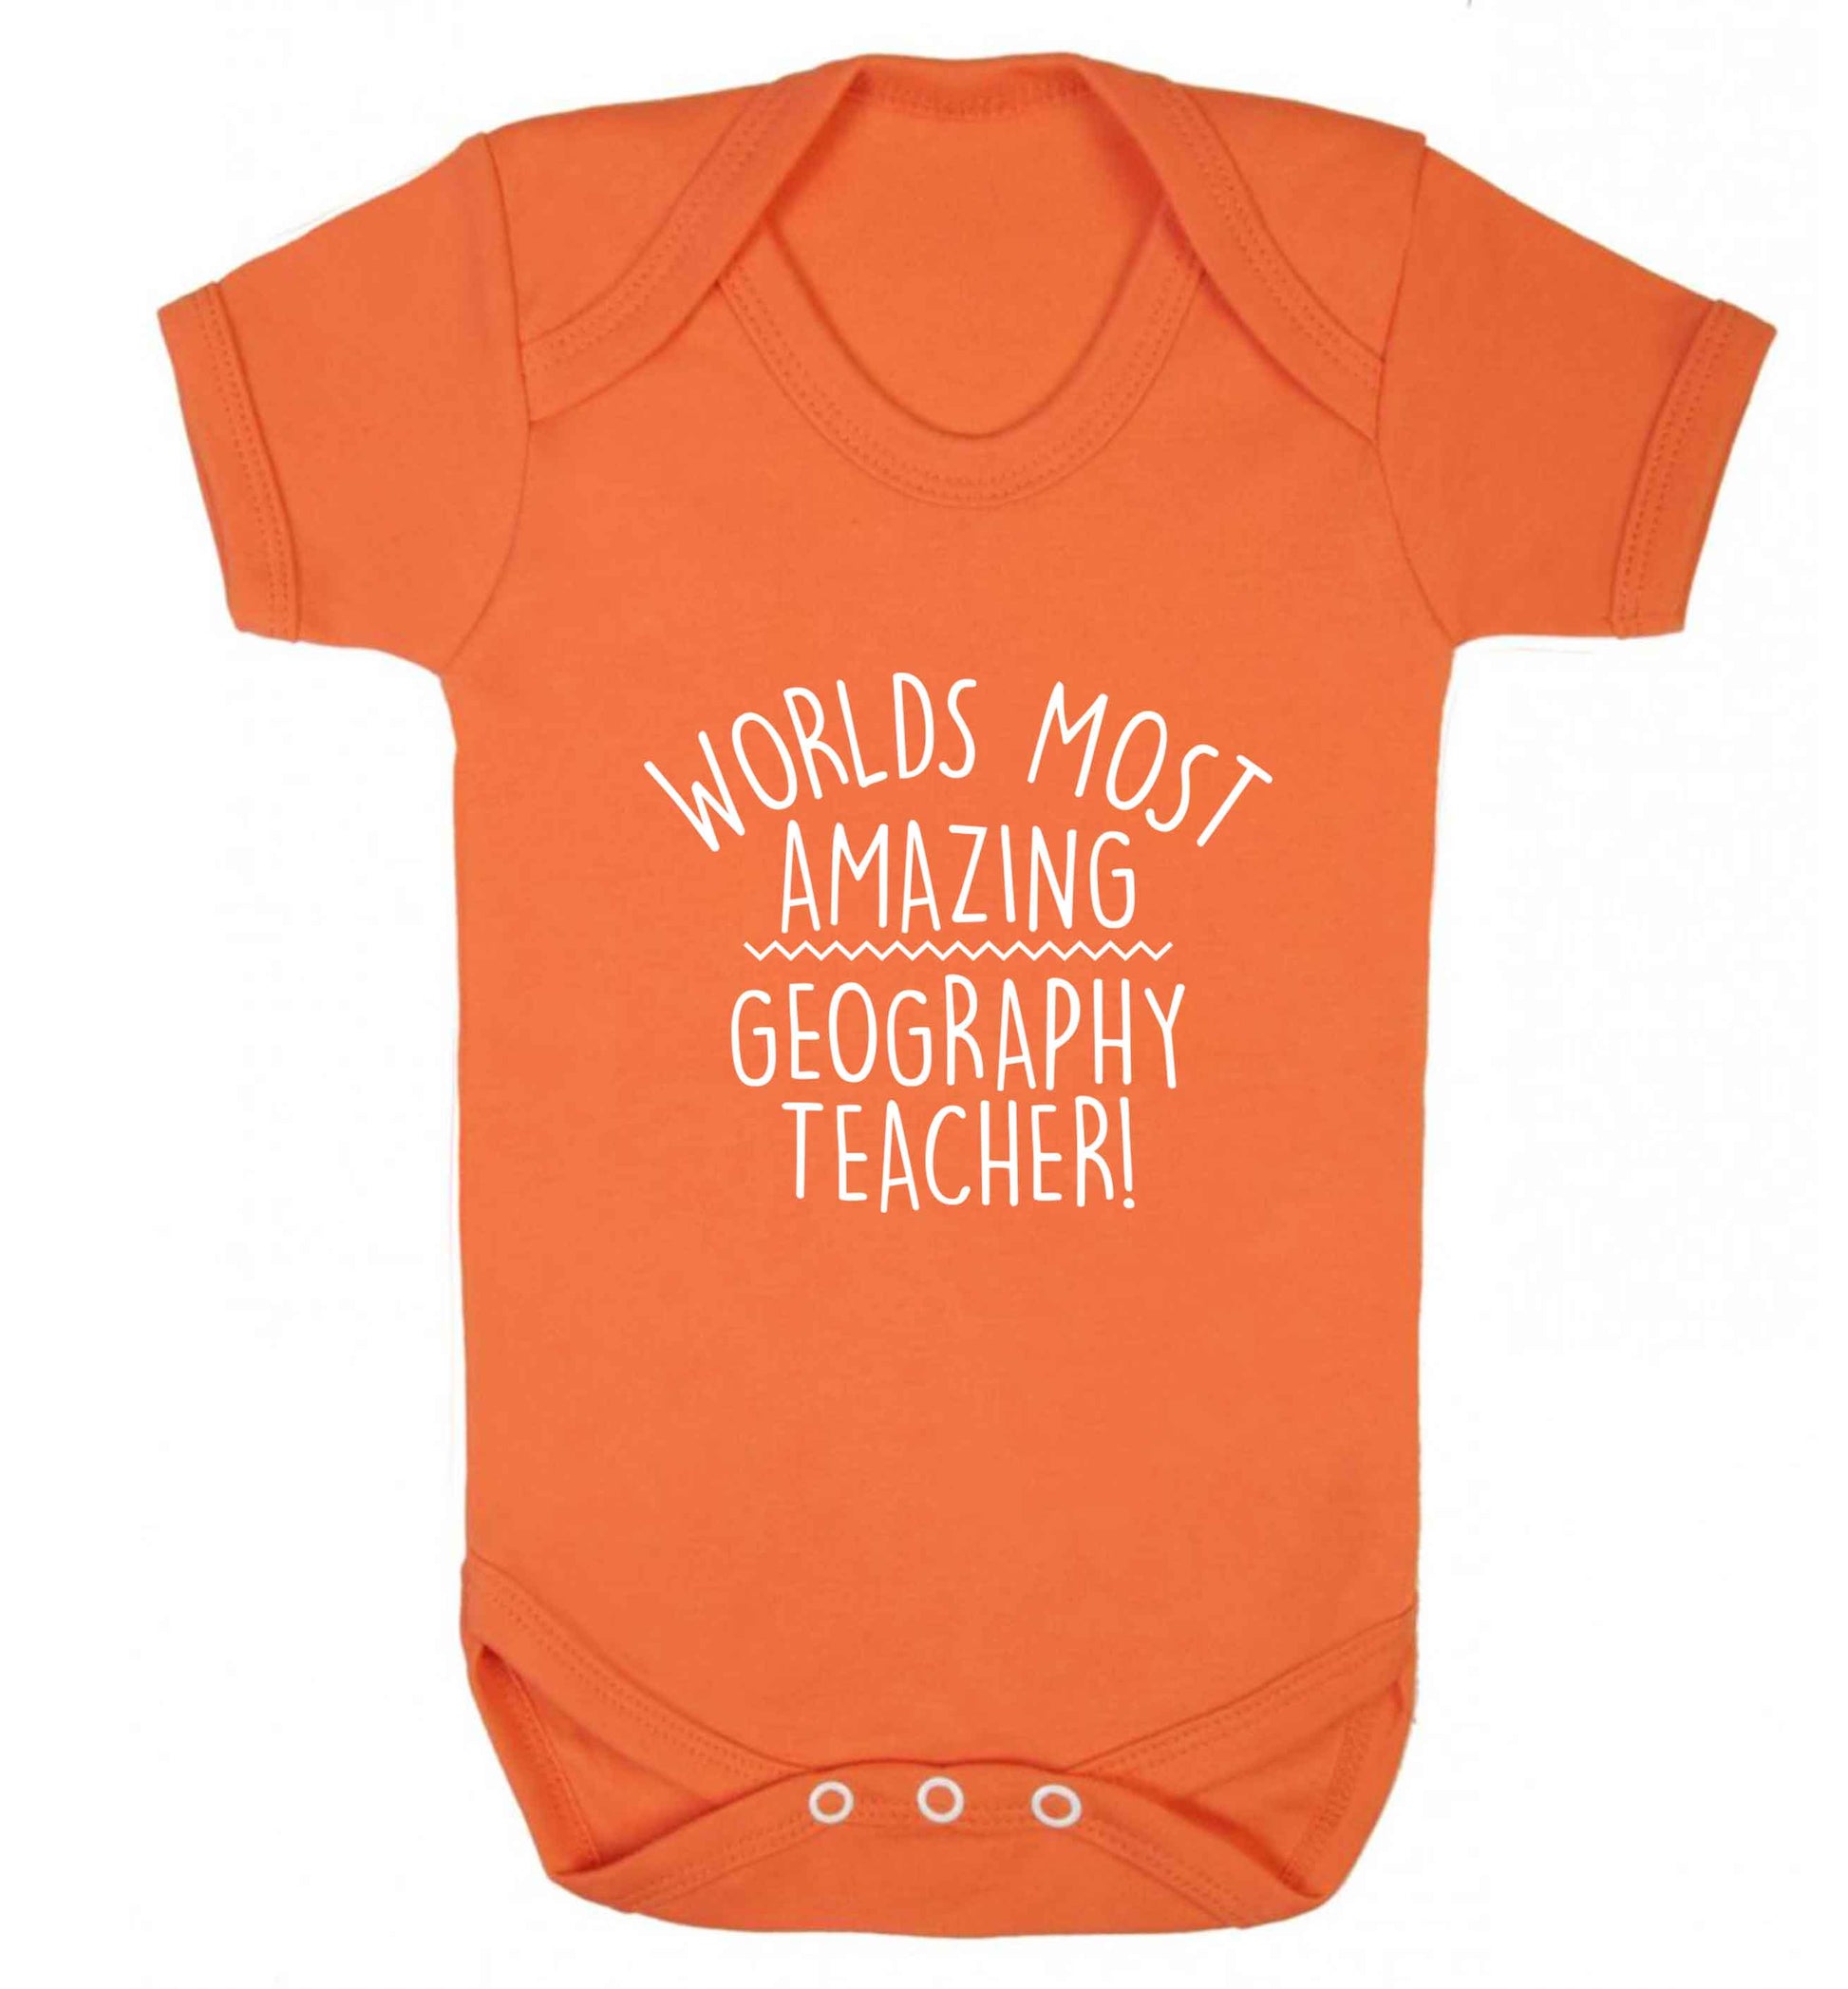 Worlds most amazing geography teacher baby vest orange 18-24 months